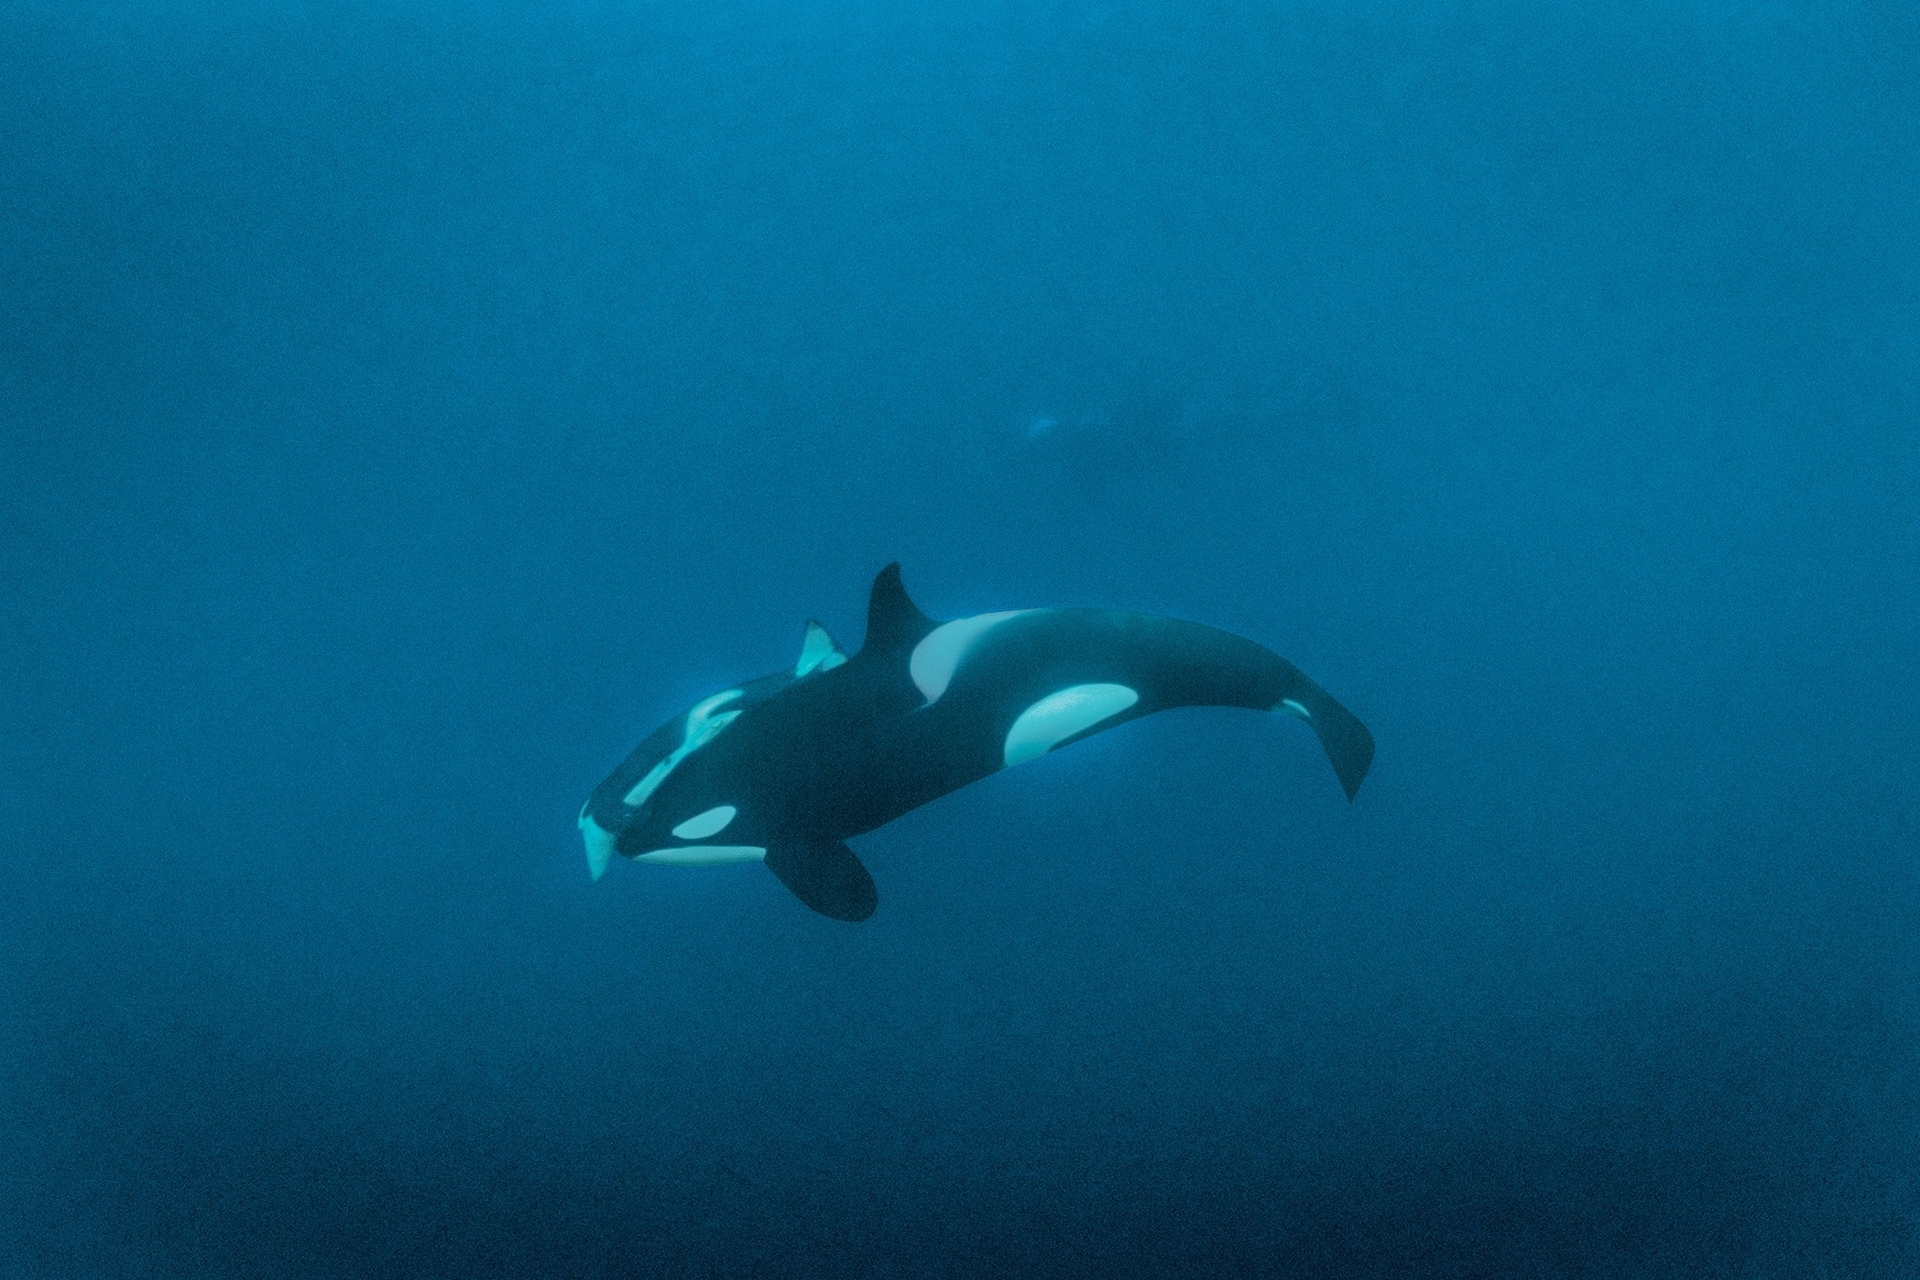 在挪威北極圈的黑暗中，一隻應該是母鯨的雌性虎鯨帶著一隻蓋在牠身上的死去幼鯨一起游泳。這種行為之前曾在鯨魚身上被人觀察到；死去的幼鯨可能會被攜帶數天甚至數週。史蓋瑞在Disney+紀錄片《鯨魚的秘密》中說，這種行為凸顯出虎鯨是「非常感性的生物」，也「提醒我們生命很寶貴」。PHOTOGRAPH BY BRIAN SKERRY 